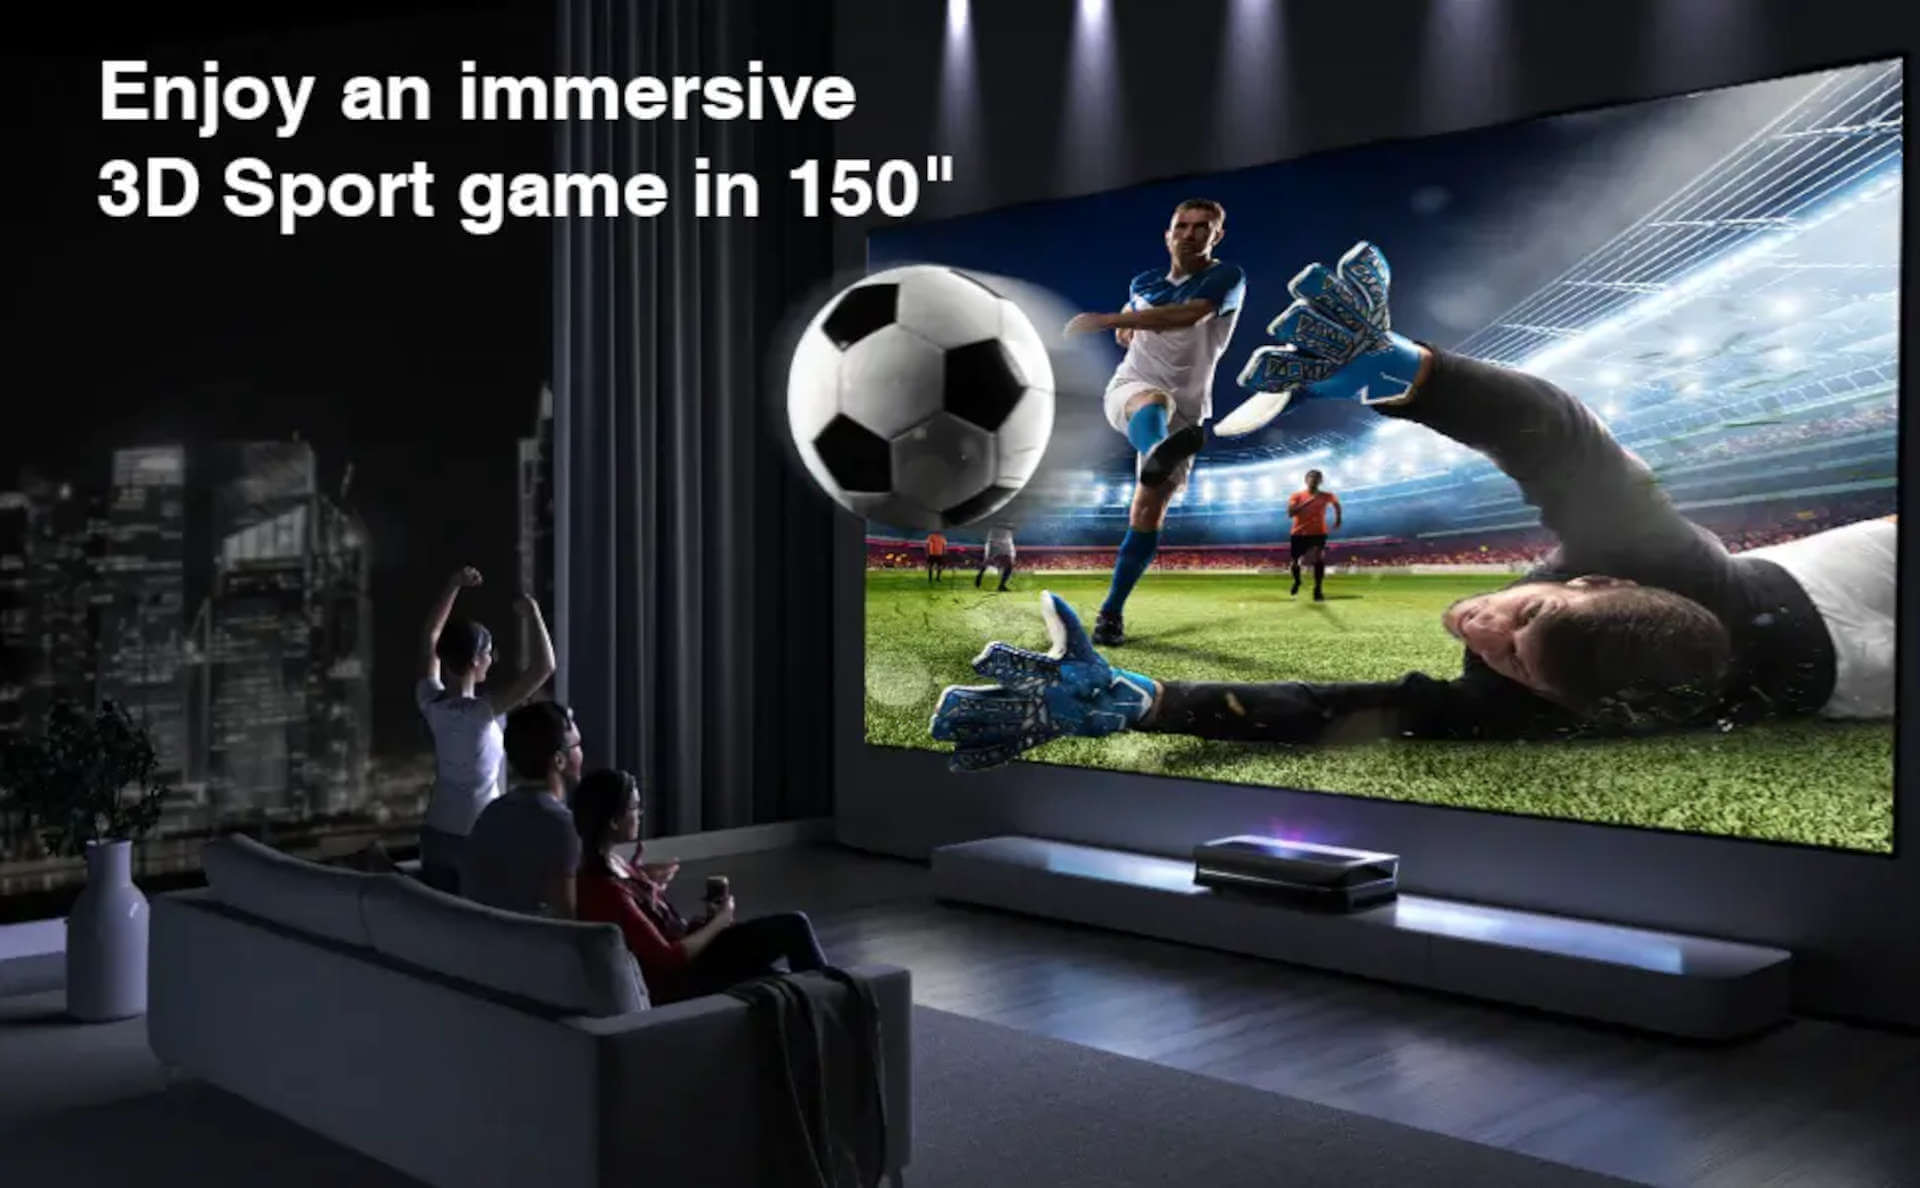 Awol Vision DG002 DLP Link 3D Glasses 2-Packs | Profitez d'un jeu de sport immersif en 3D sur un écran de 150 pouces.